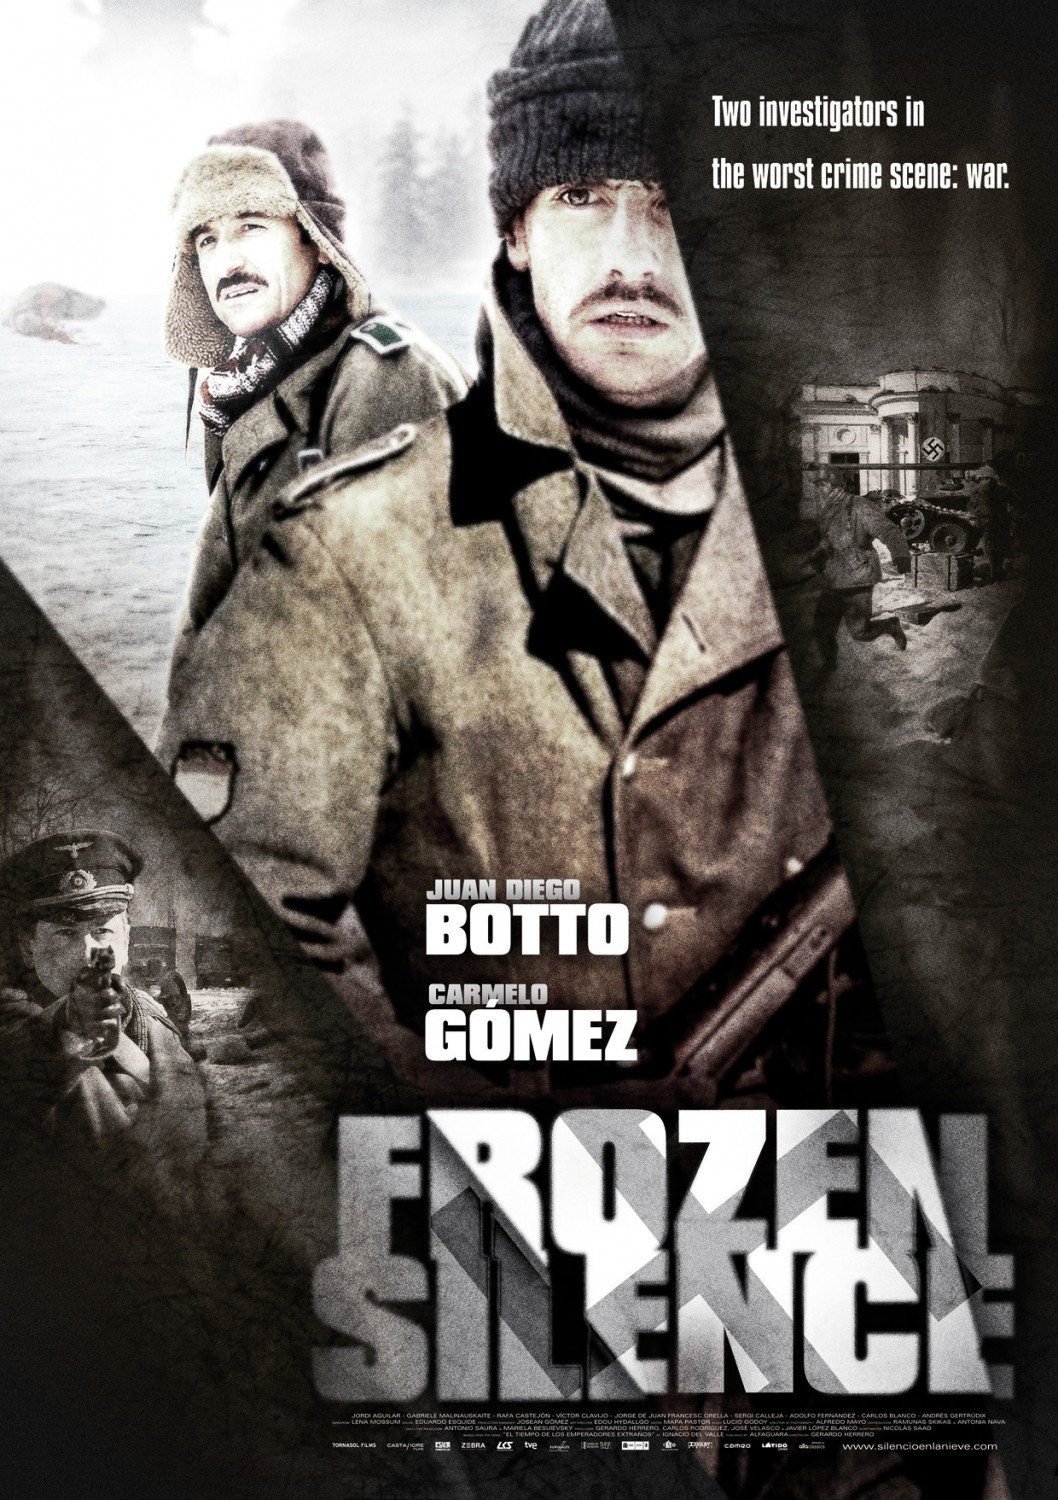 Extra Large Movie Poster Image for Silencio en la nieve (#2 of 2)